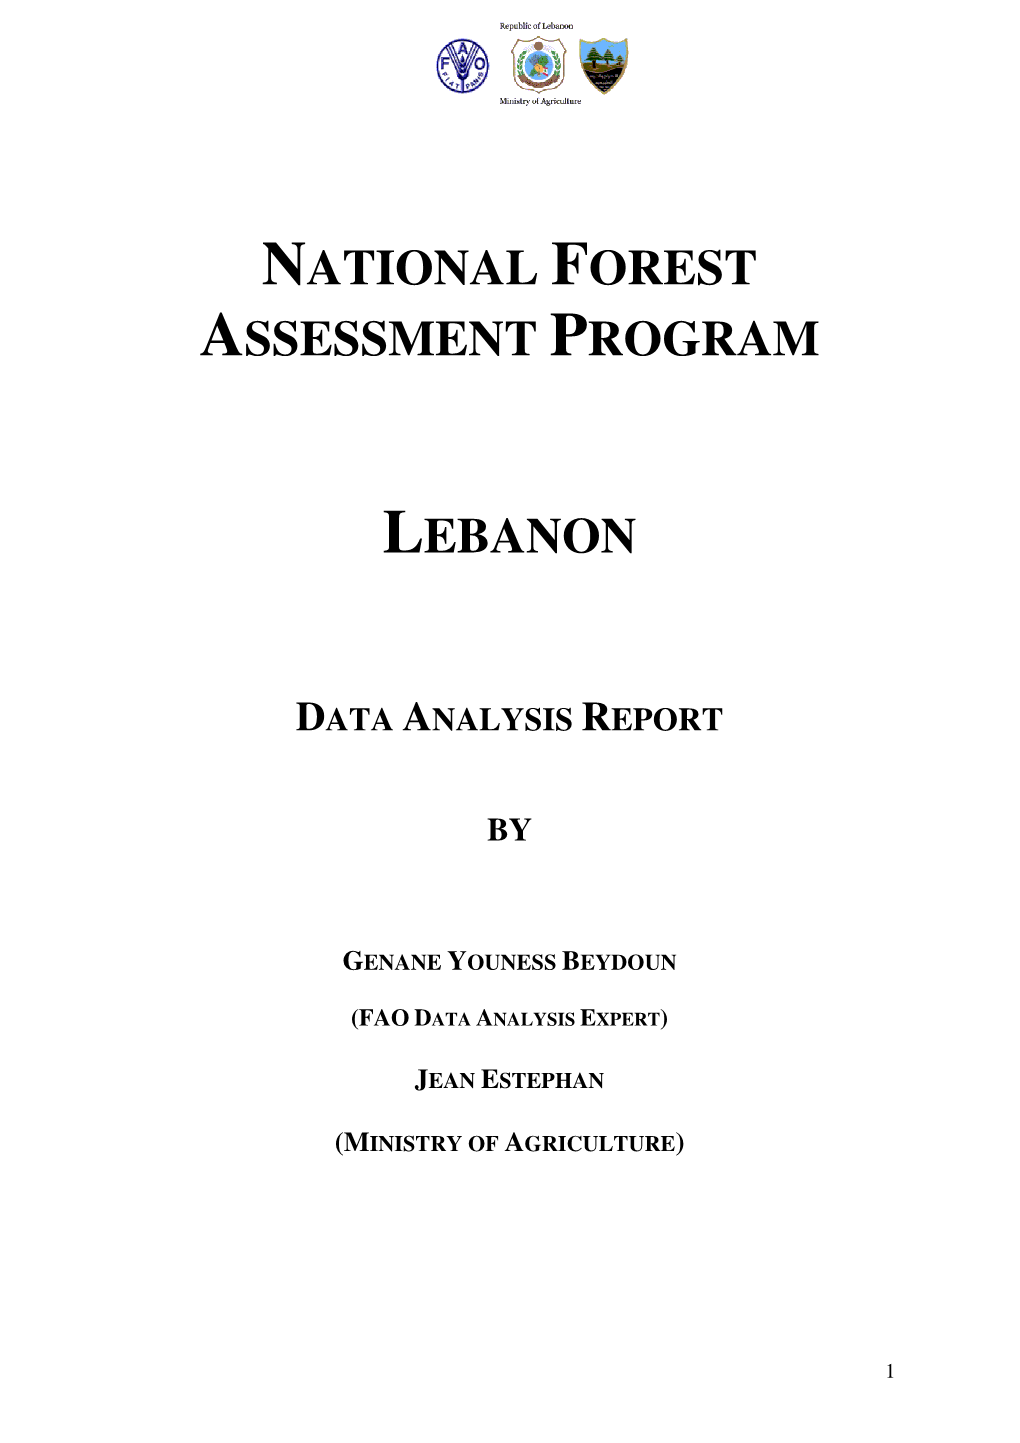 National Forest Assessment Program Lebanon